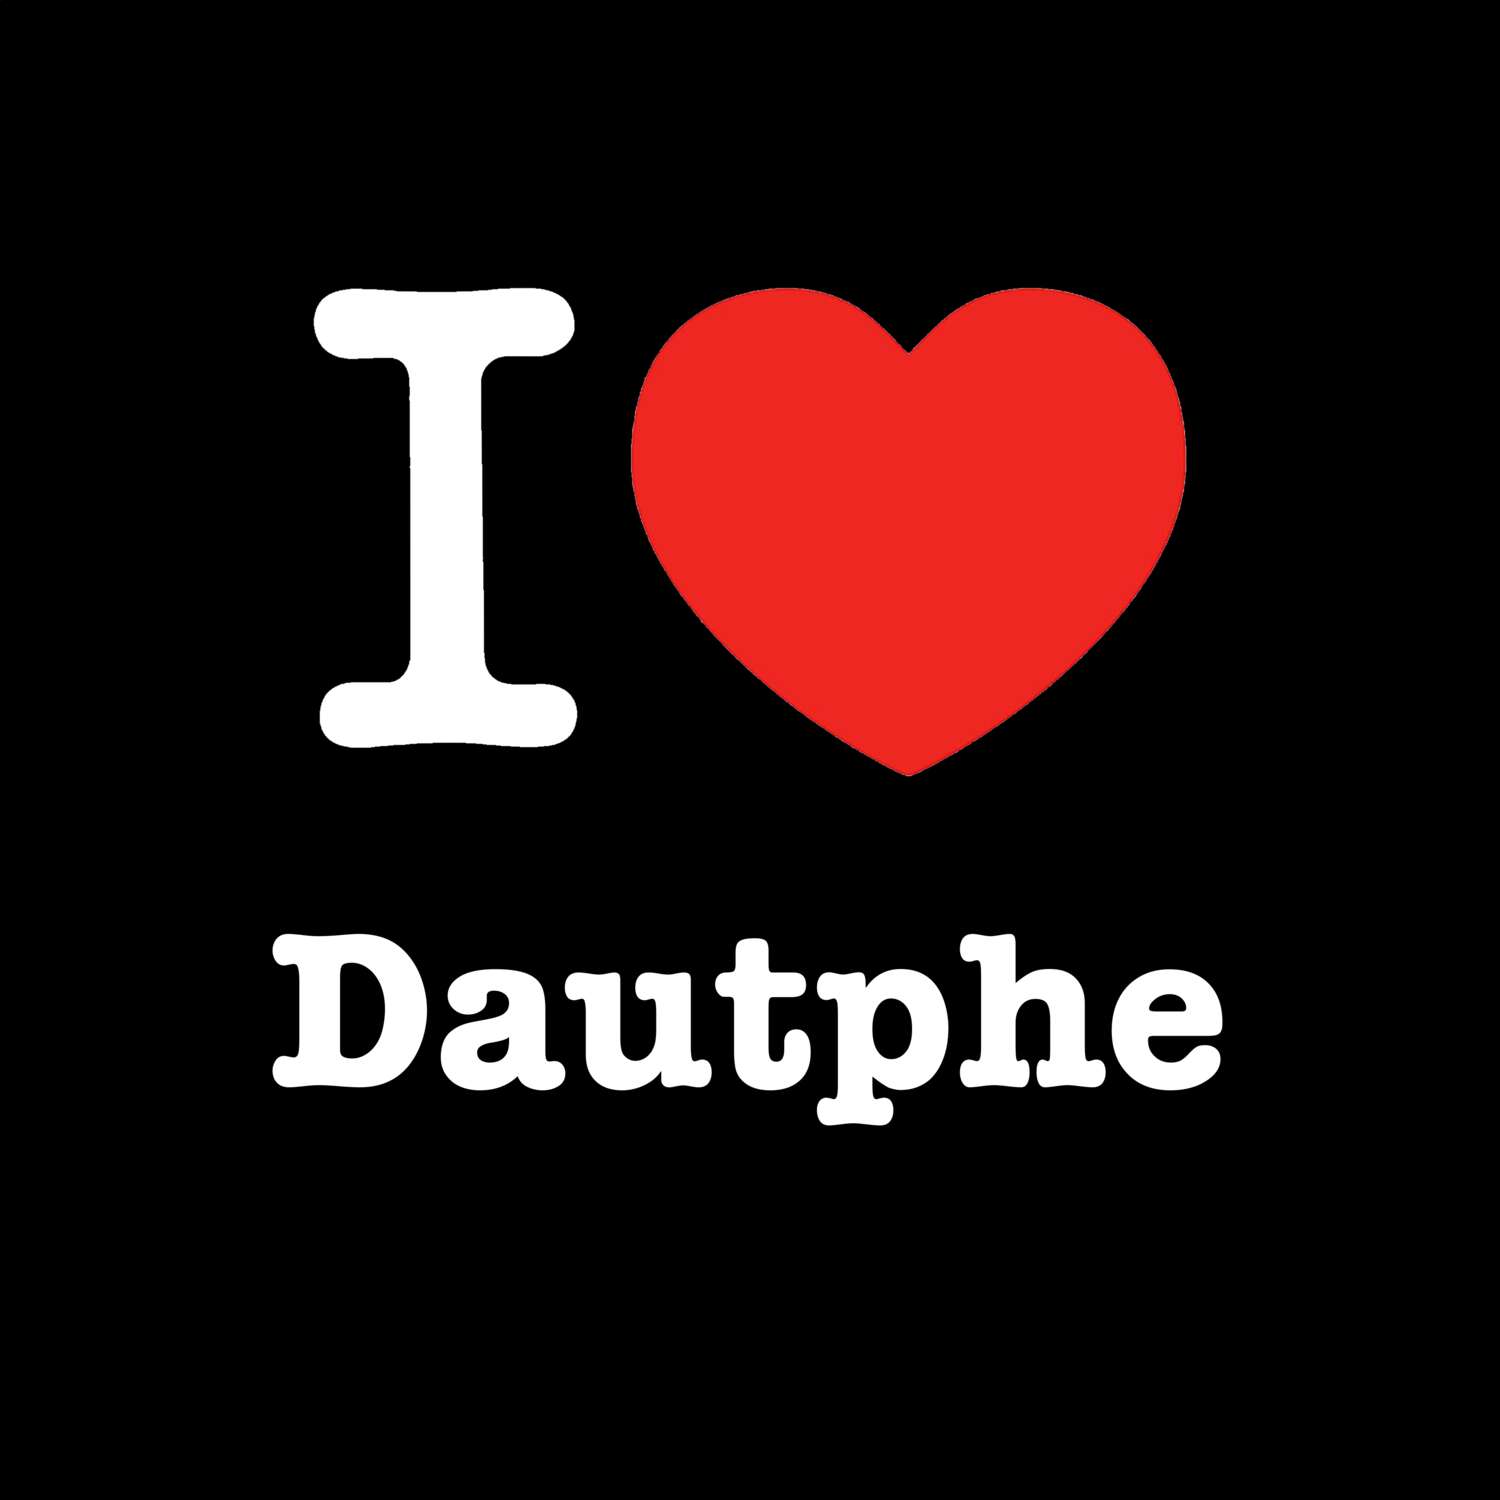 Dautphe T-Shirt »I love«